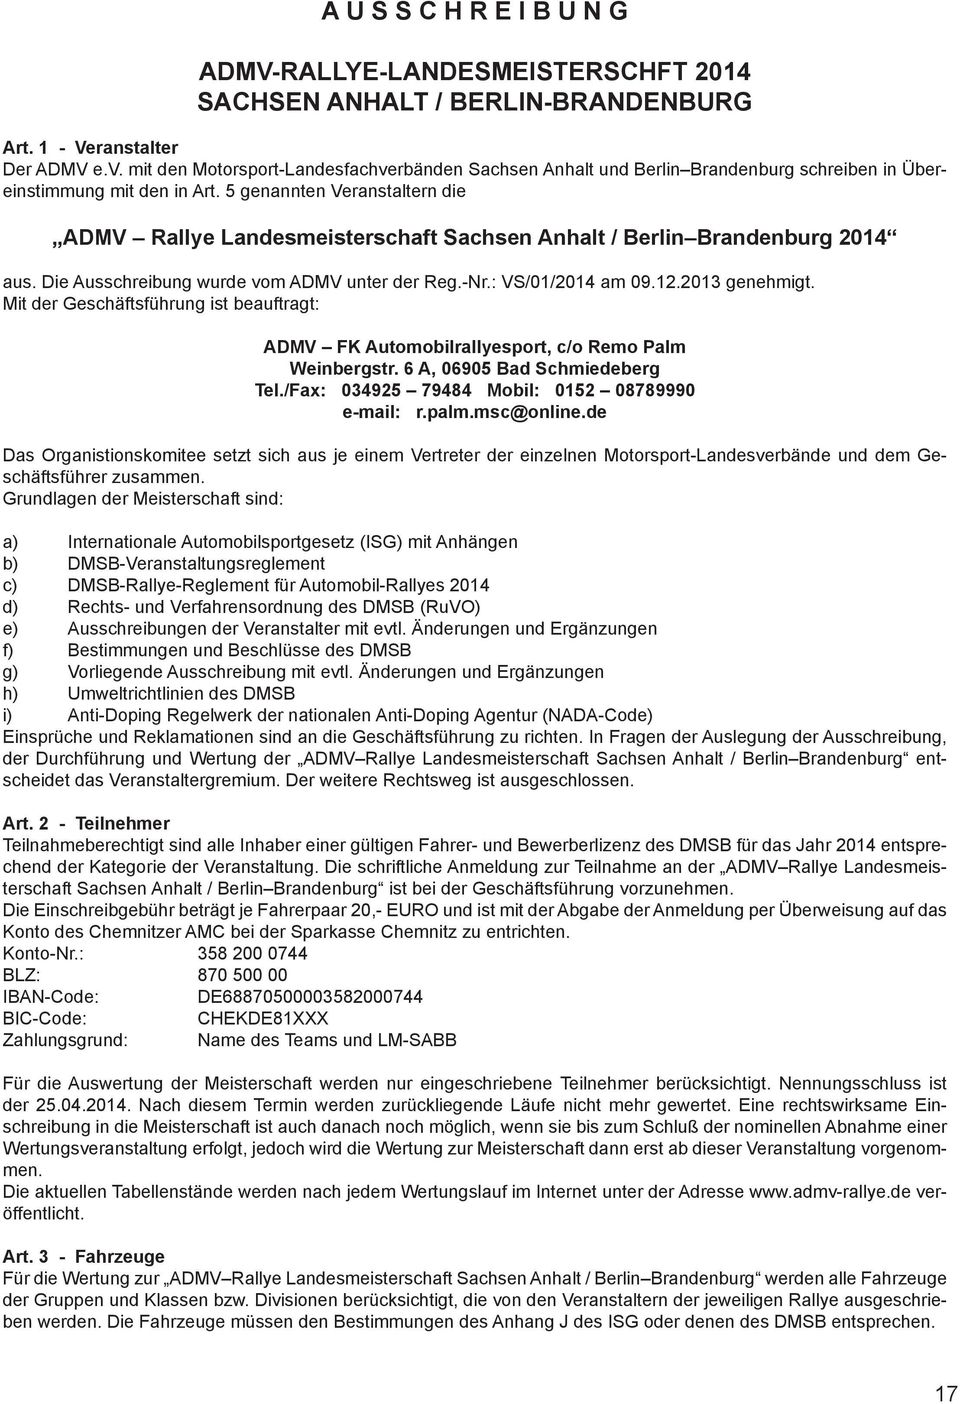 5 genannten Veranstaltern die ADMV Rallye Landesmeisterschaft Sachsen Anhalt / Berlin Brandenburg 2014 aus. Die Ausschreibung wurde vom ADMV unter der Reg.-Nr.: VS/01/2014 am 09.12.2013 genehmigt.